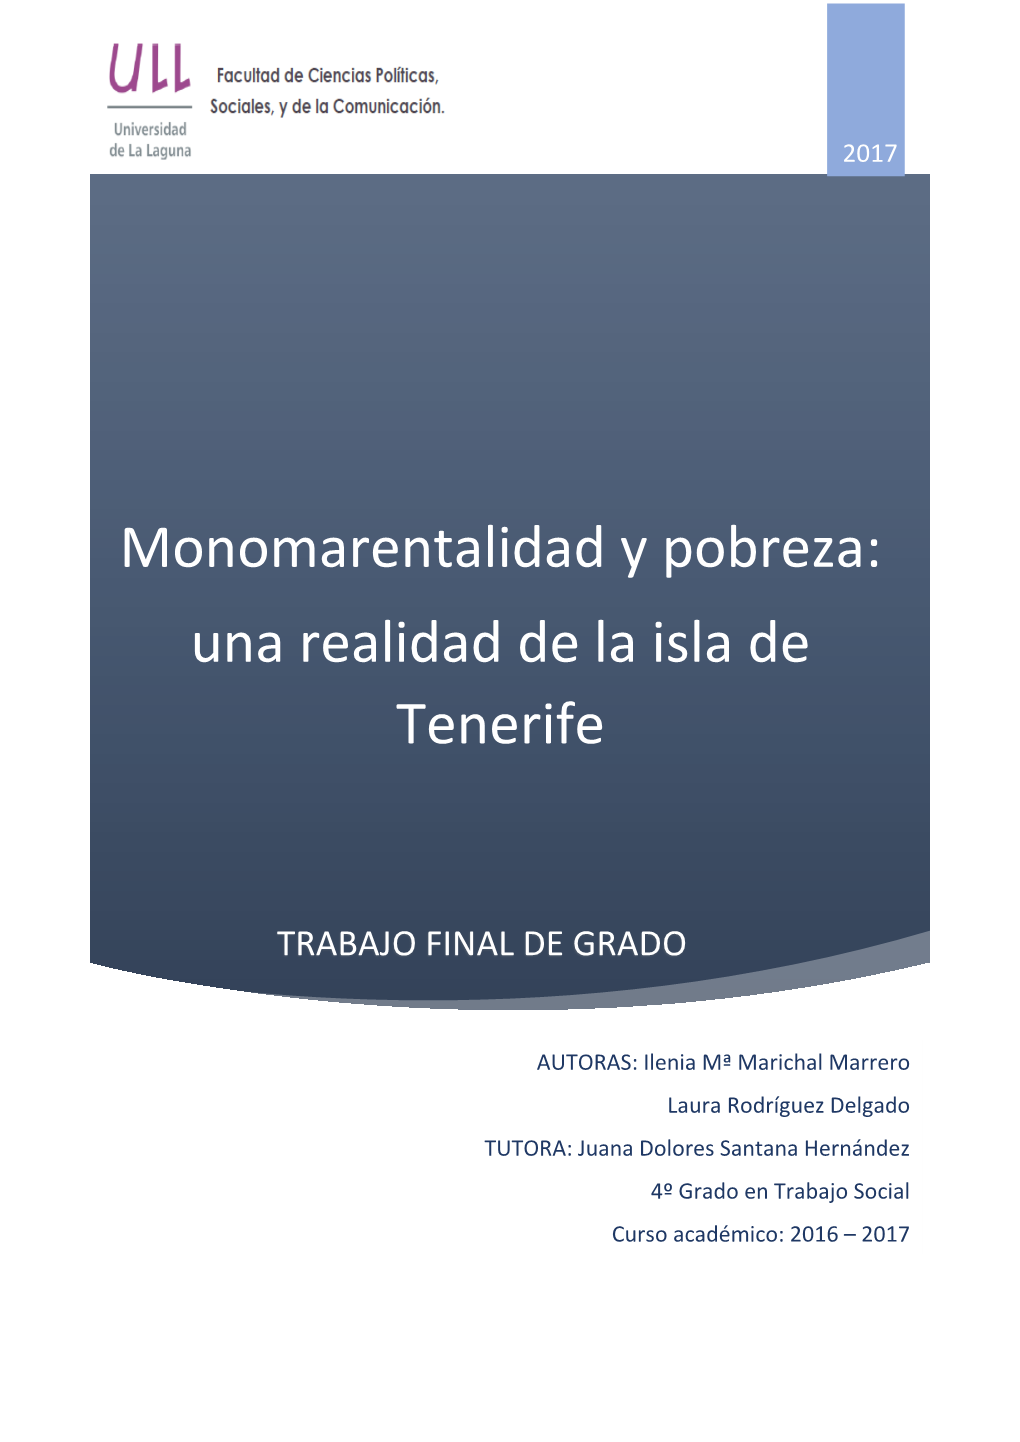 Monomarentalidad Y Pobreza: Una Realidad De La Isla De Tenerife